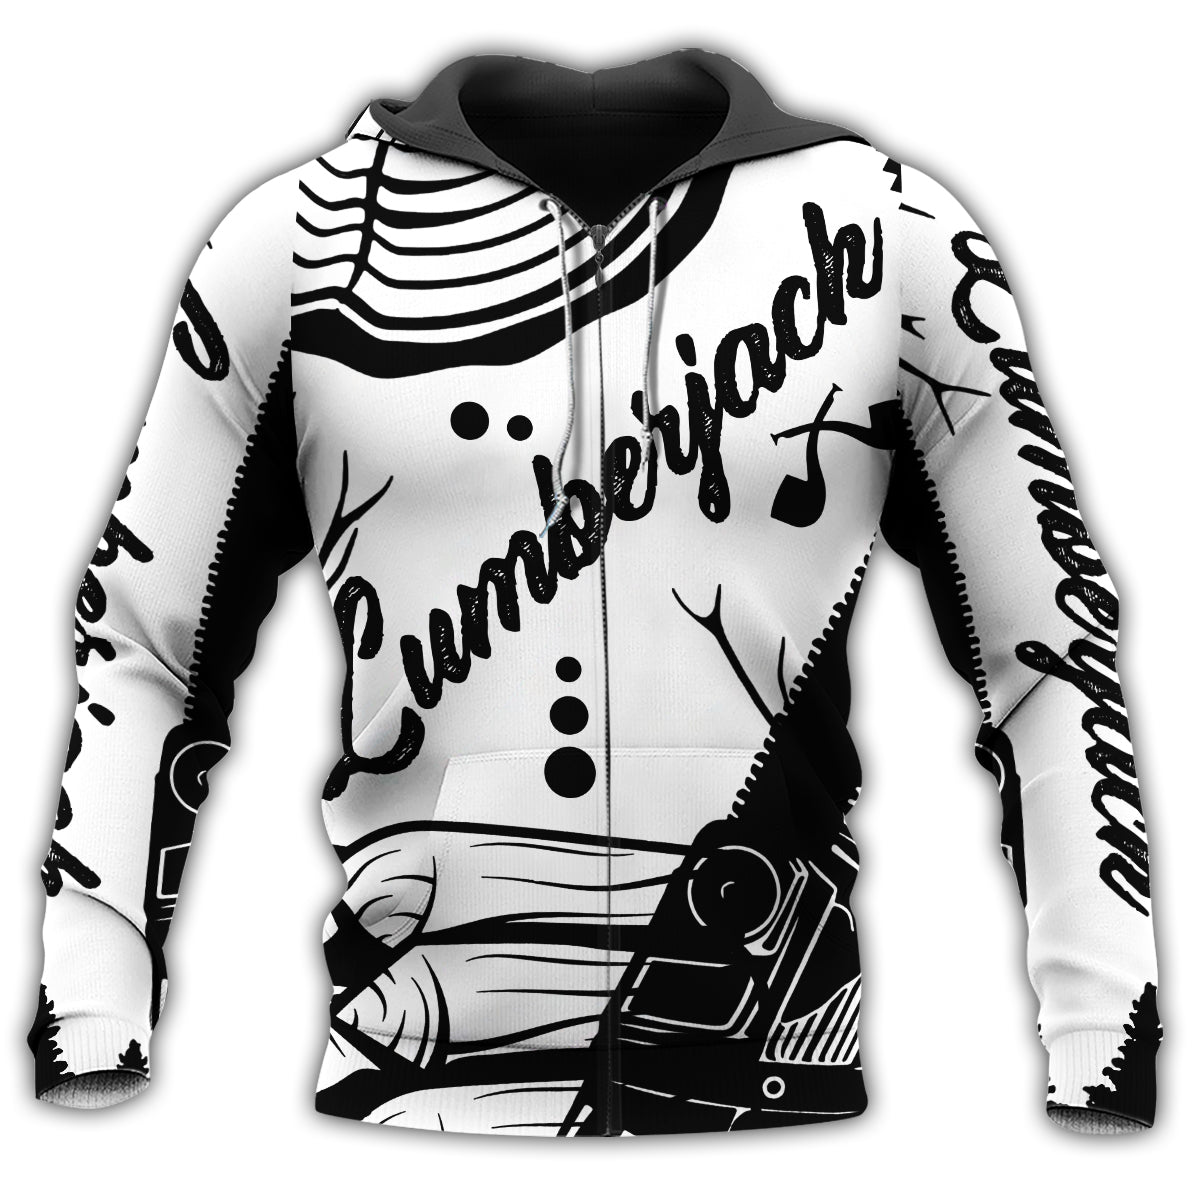 Zip Hoodie / S Lumberjack Black And White Style - Hoodie - Owls Matrix LTD